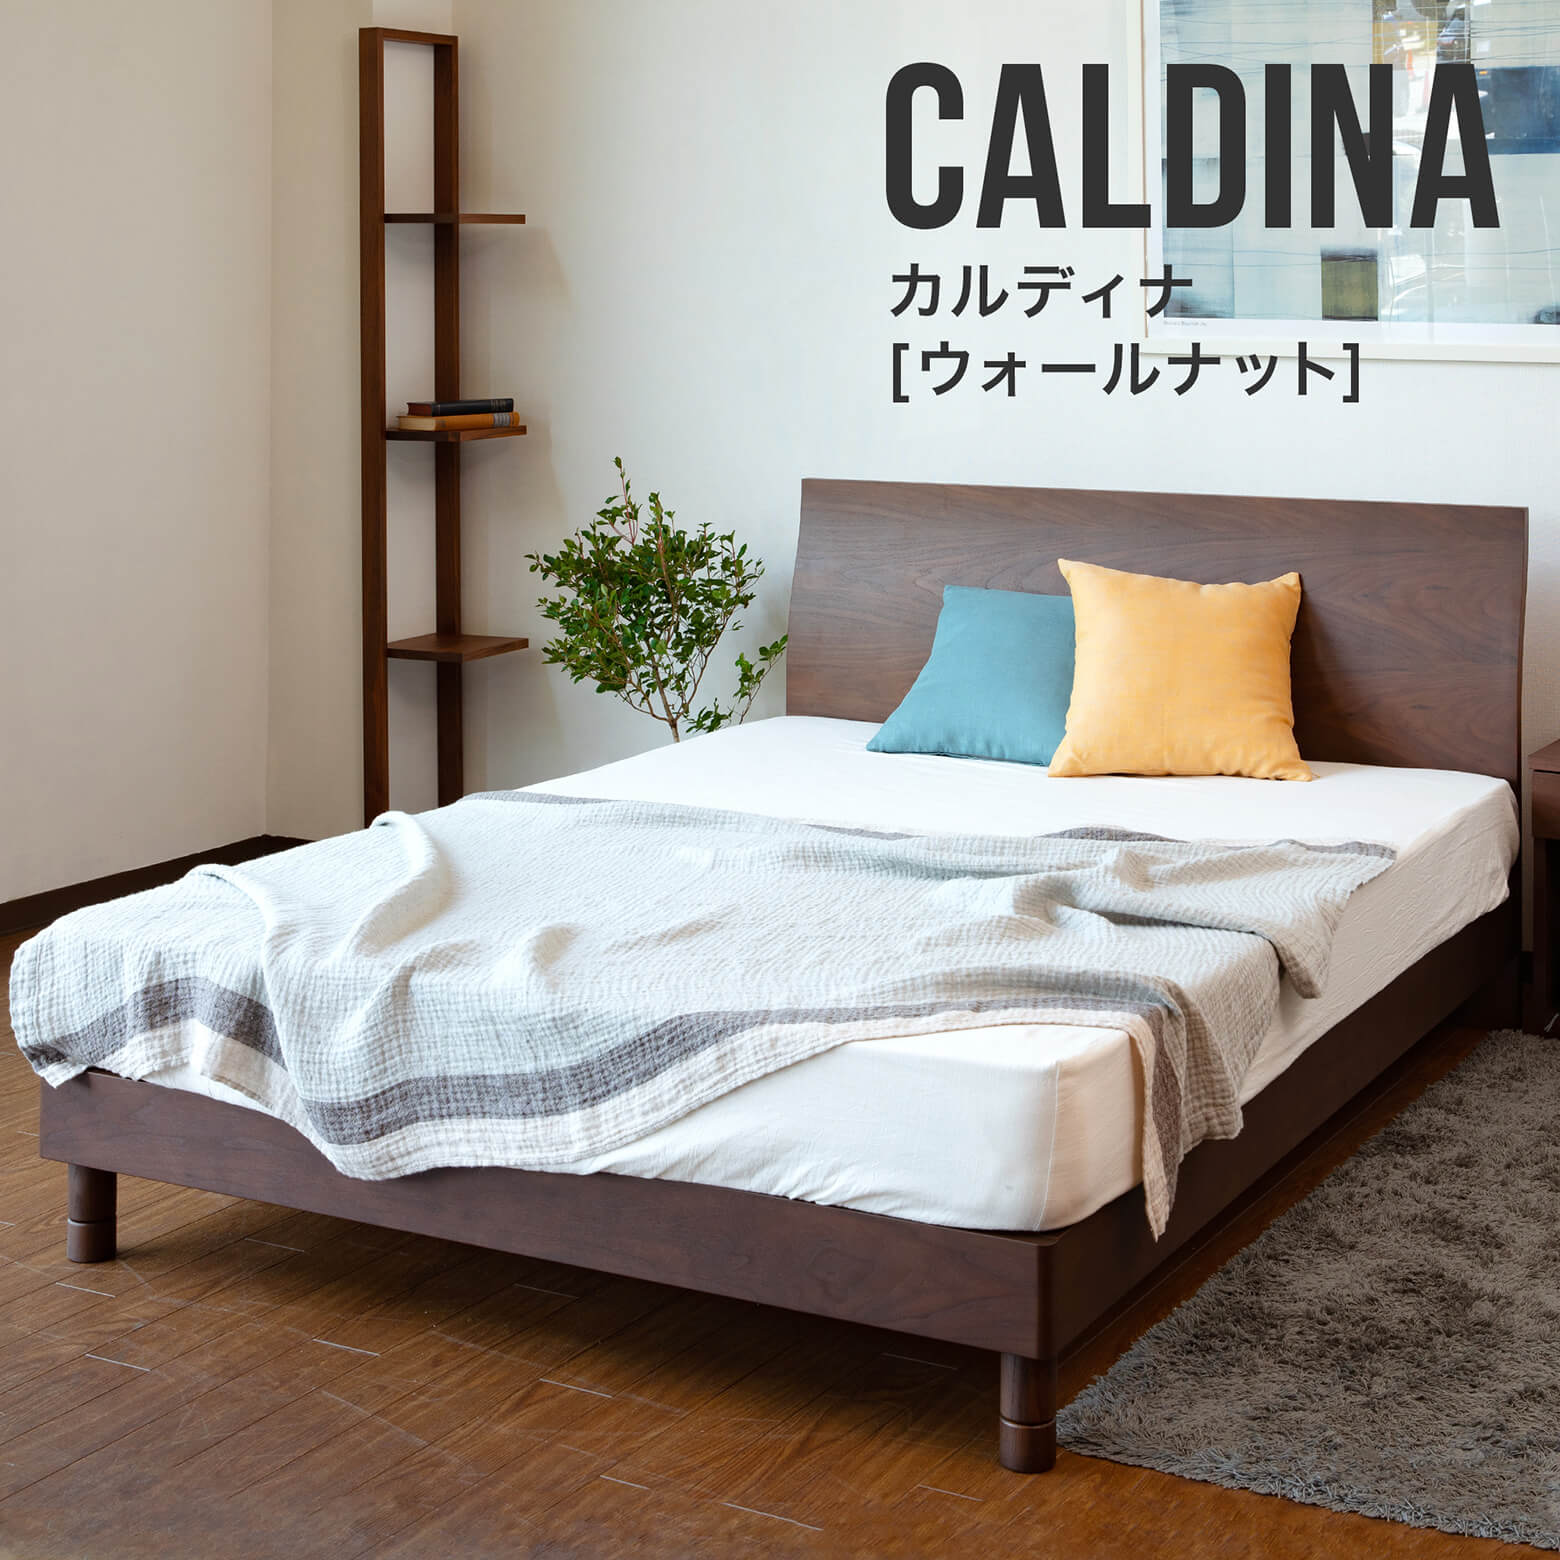 木製ベッド カルディナ(ウォールナット)